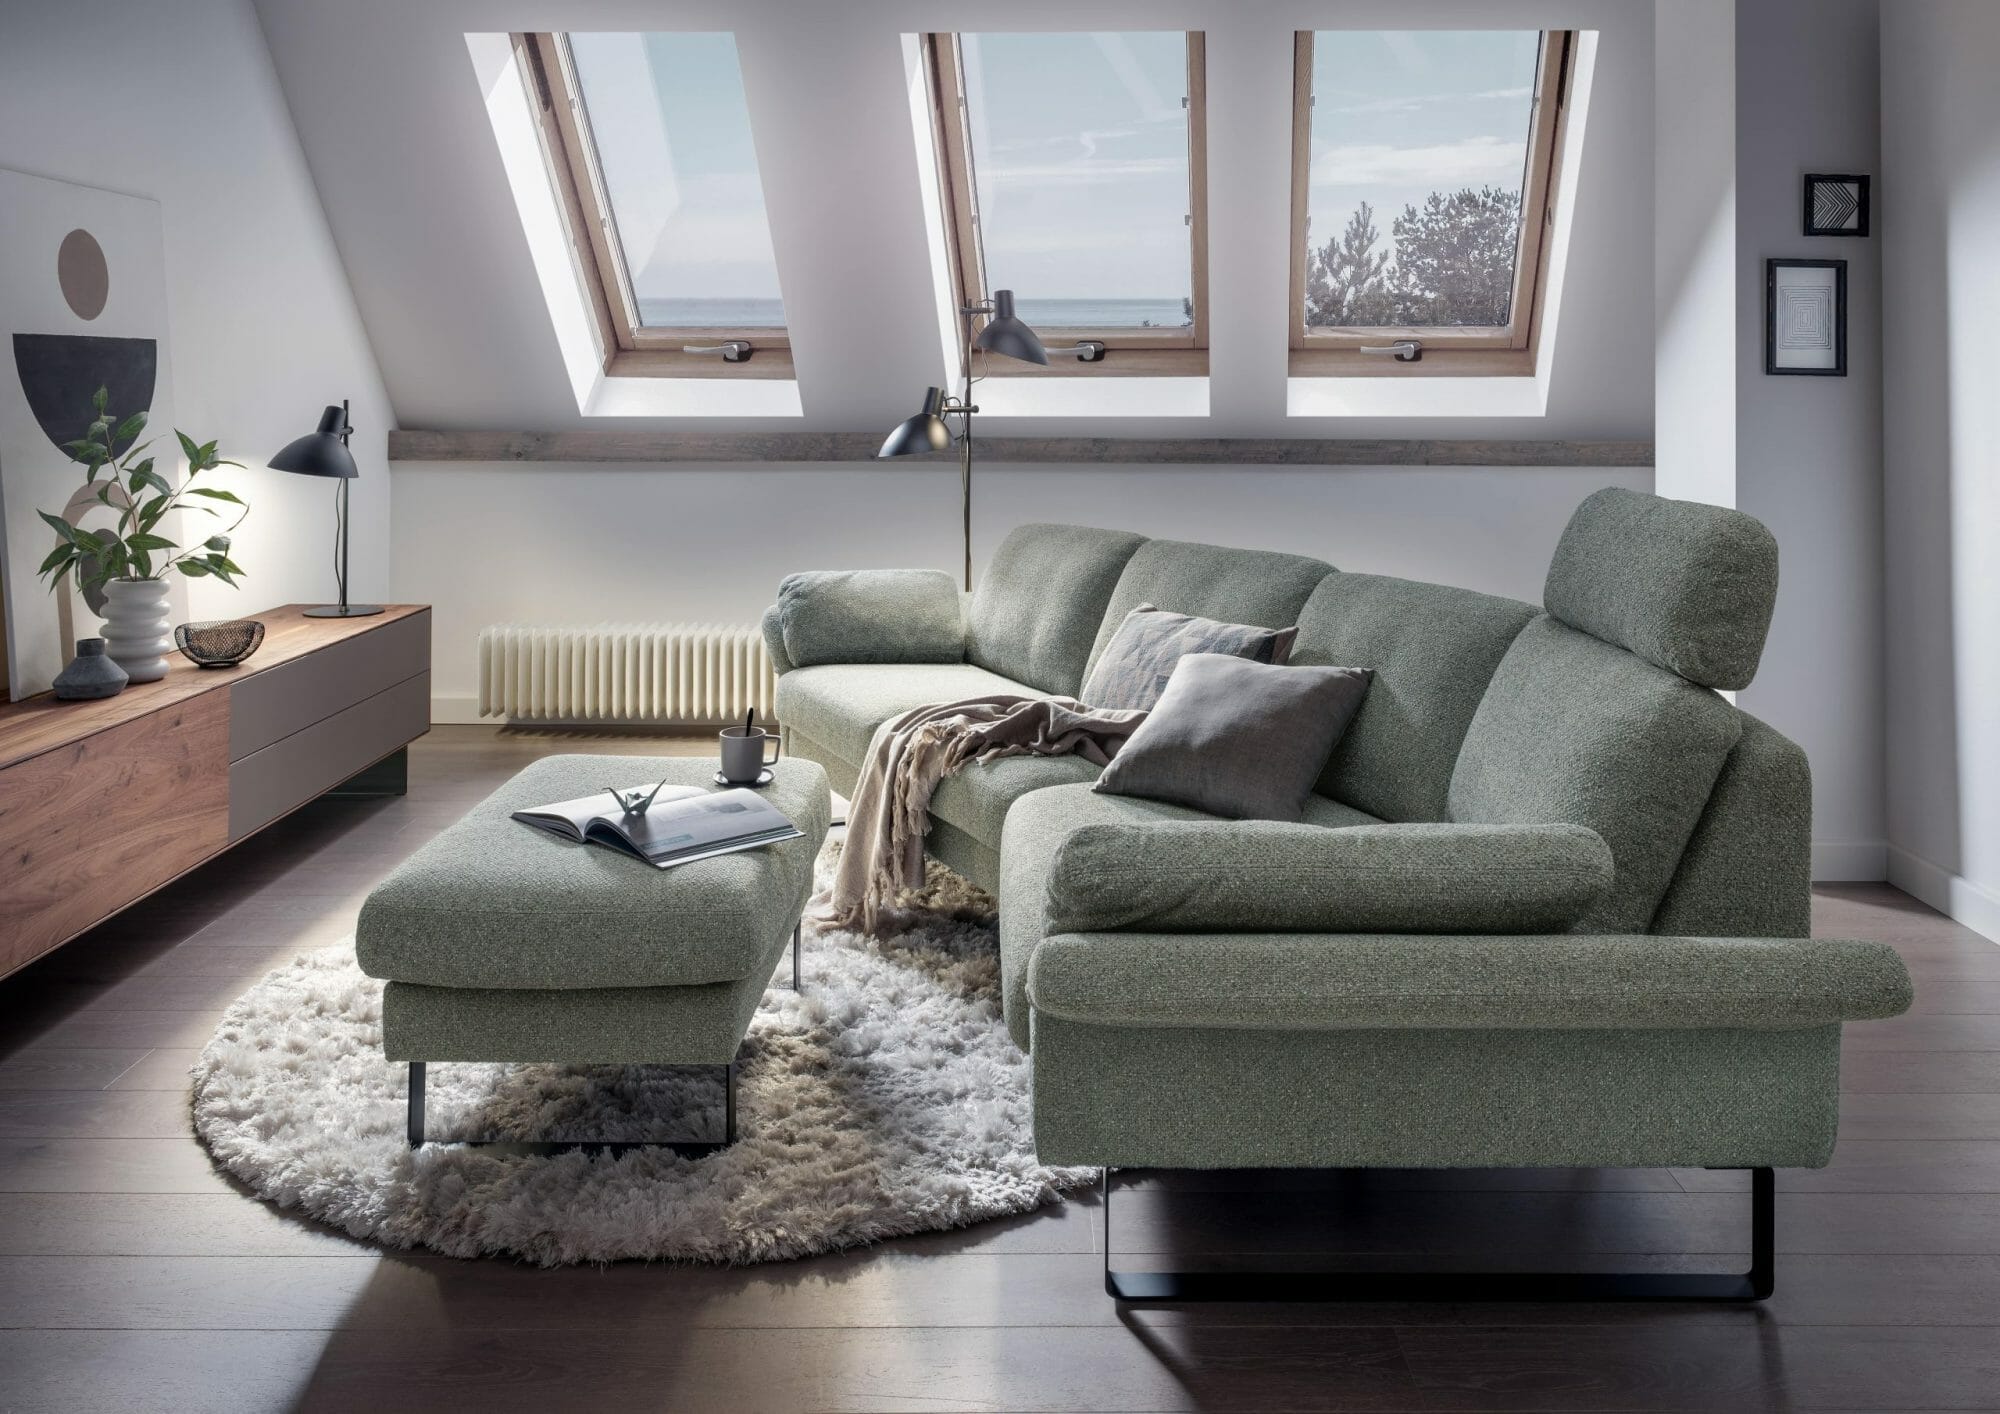 20 Tipps Wie Sie Ihr Wohnzimmer Optimal Einrichten Konnen